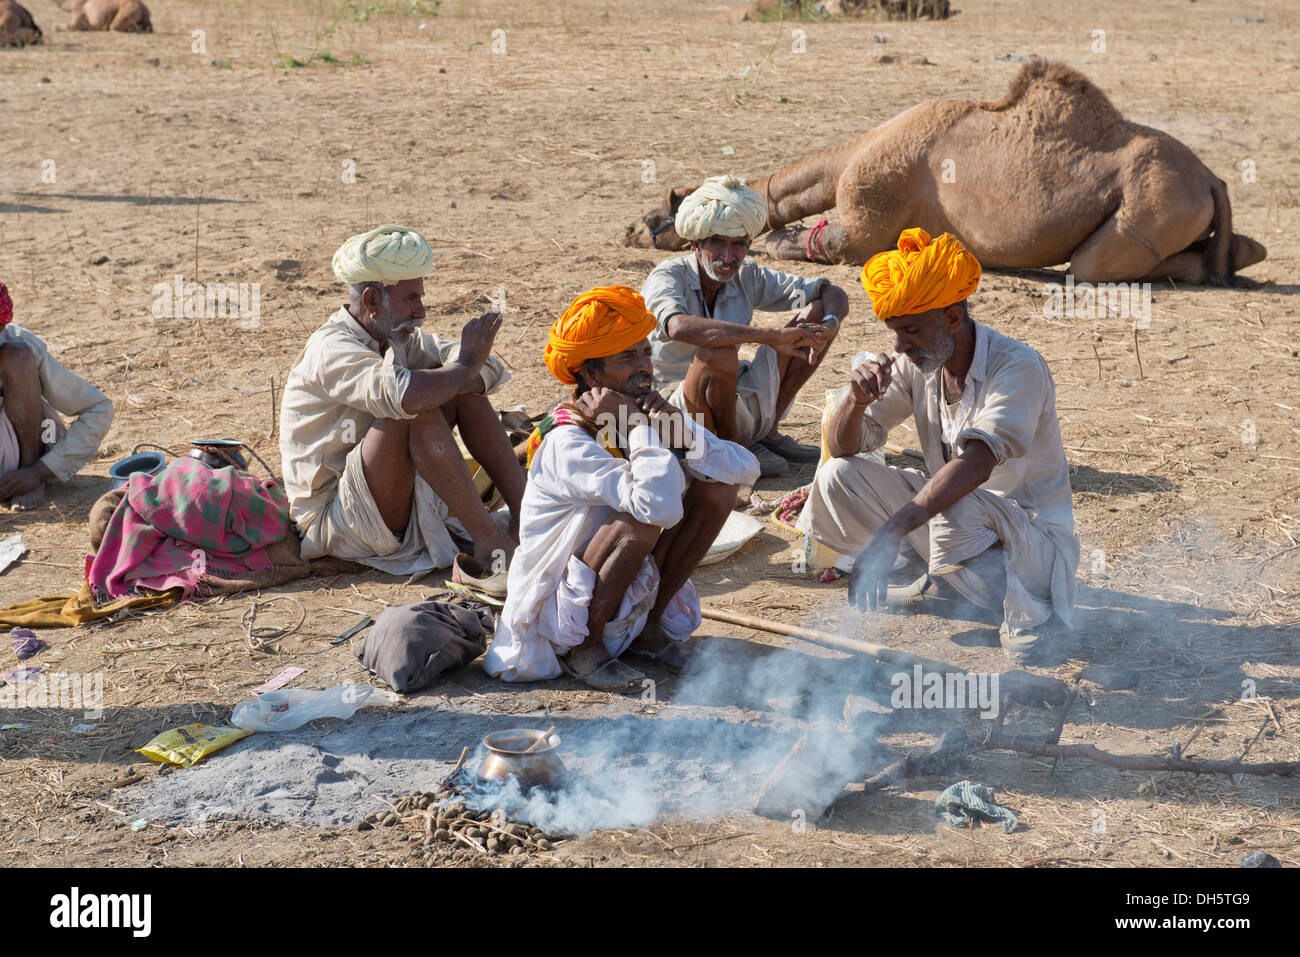 Quatre hommes indiens âgés de turbans et de porter le vêtement traditionnel Dhoti accroupis sur le sol, la nourriture est en cours de préparation Banque D'Images